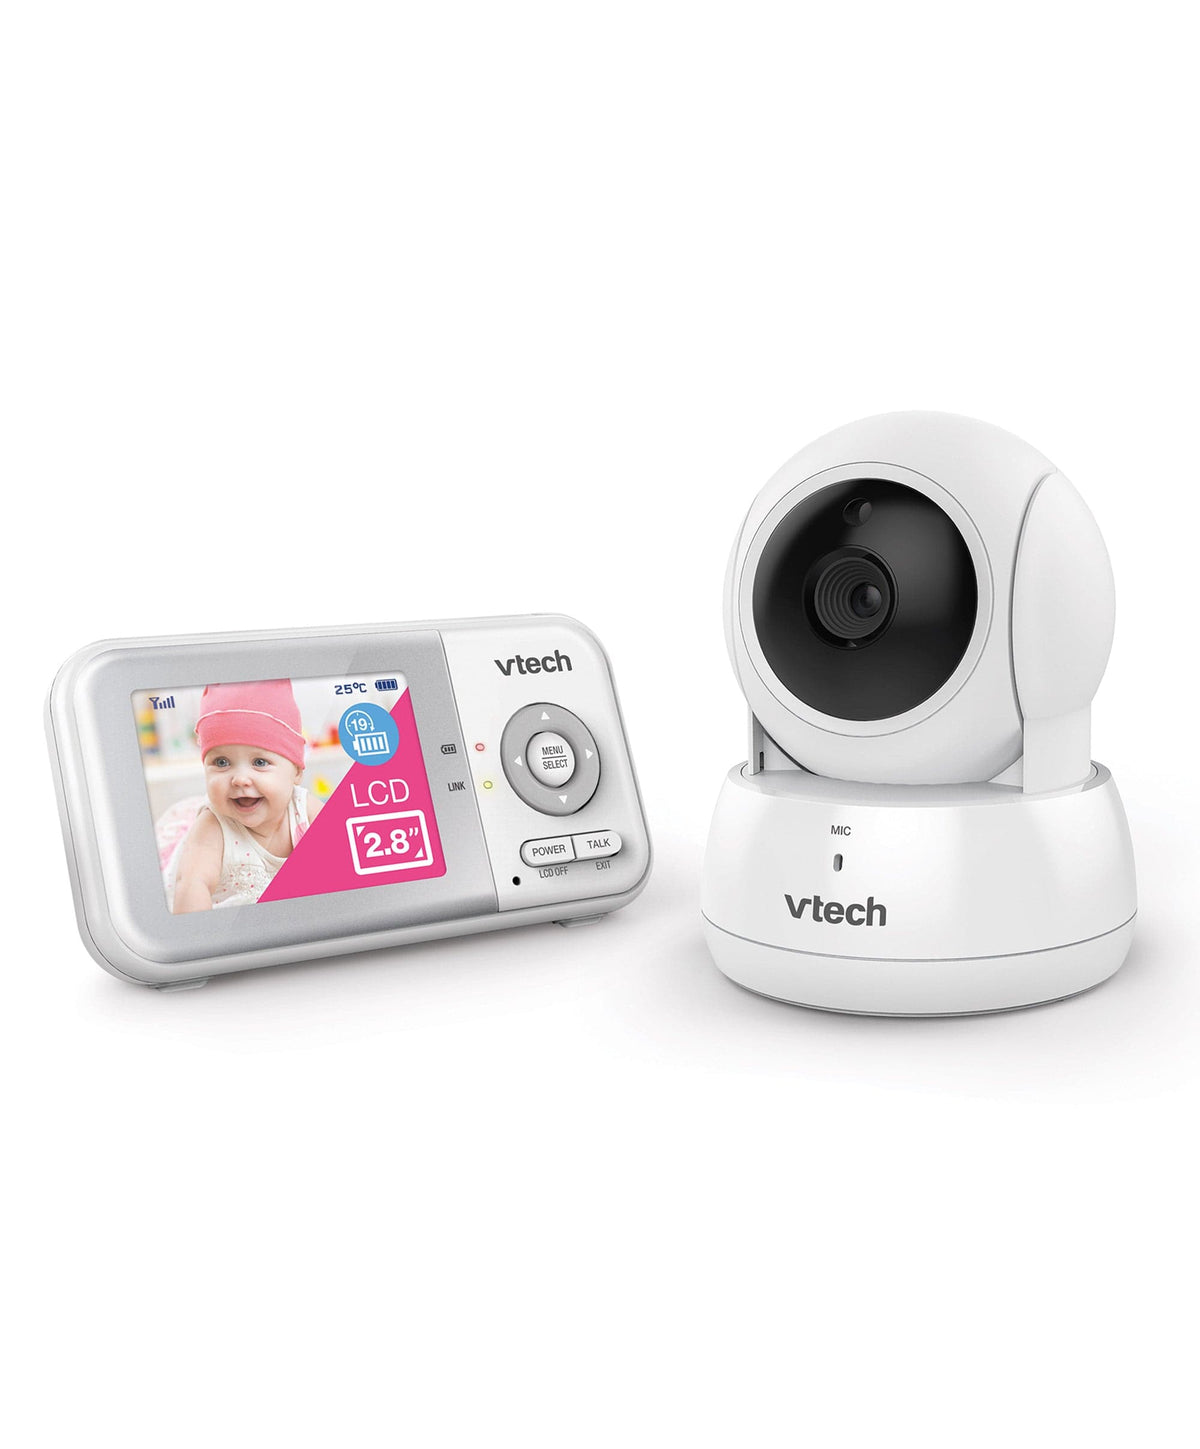  Soporte de monitor de bebé para monitor de bebé VTech  VM923/vm924, soporte flexible para cámara de bebé para monitor de bebé  VTech, soporte para monitor de cámara de bebé para cuna 